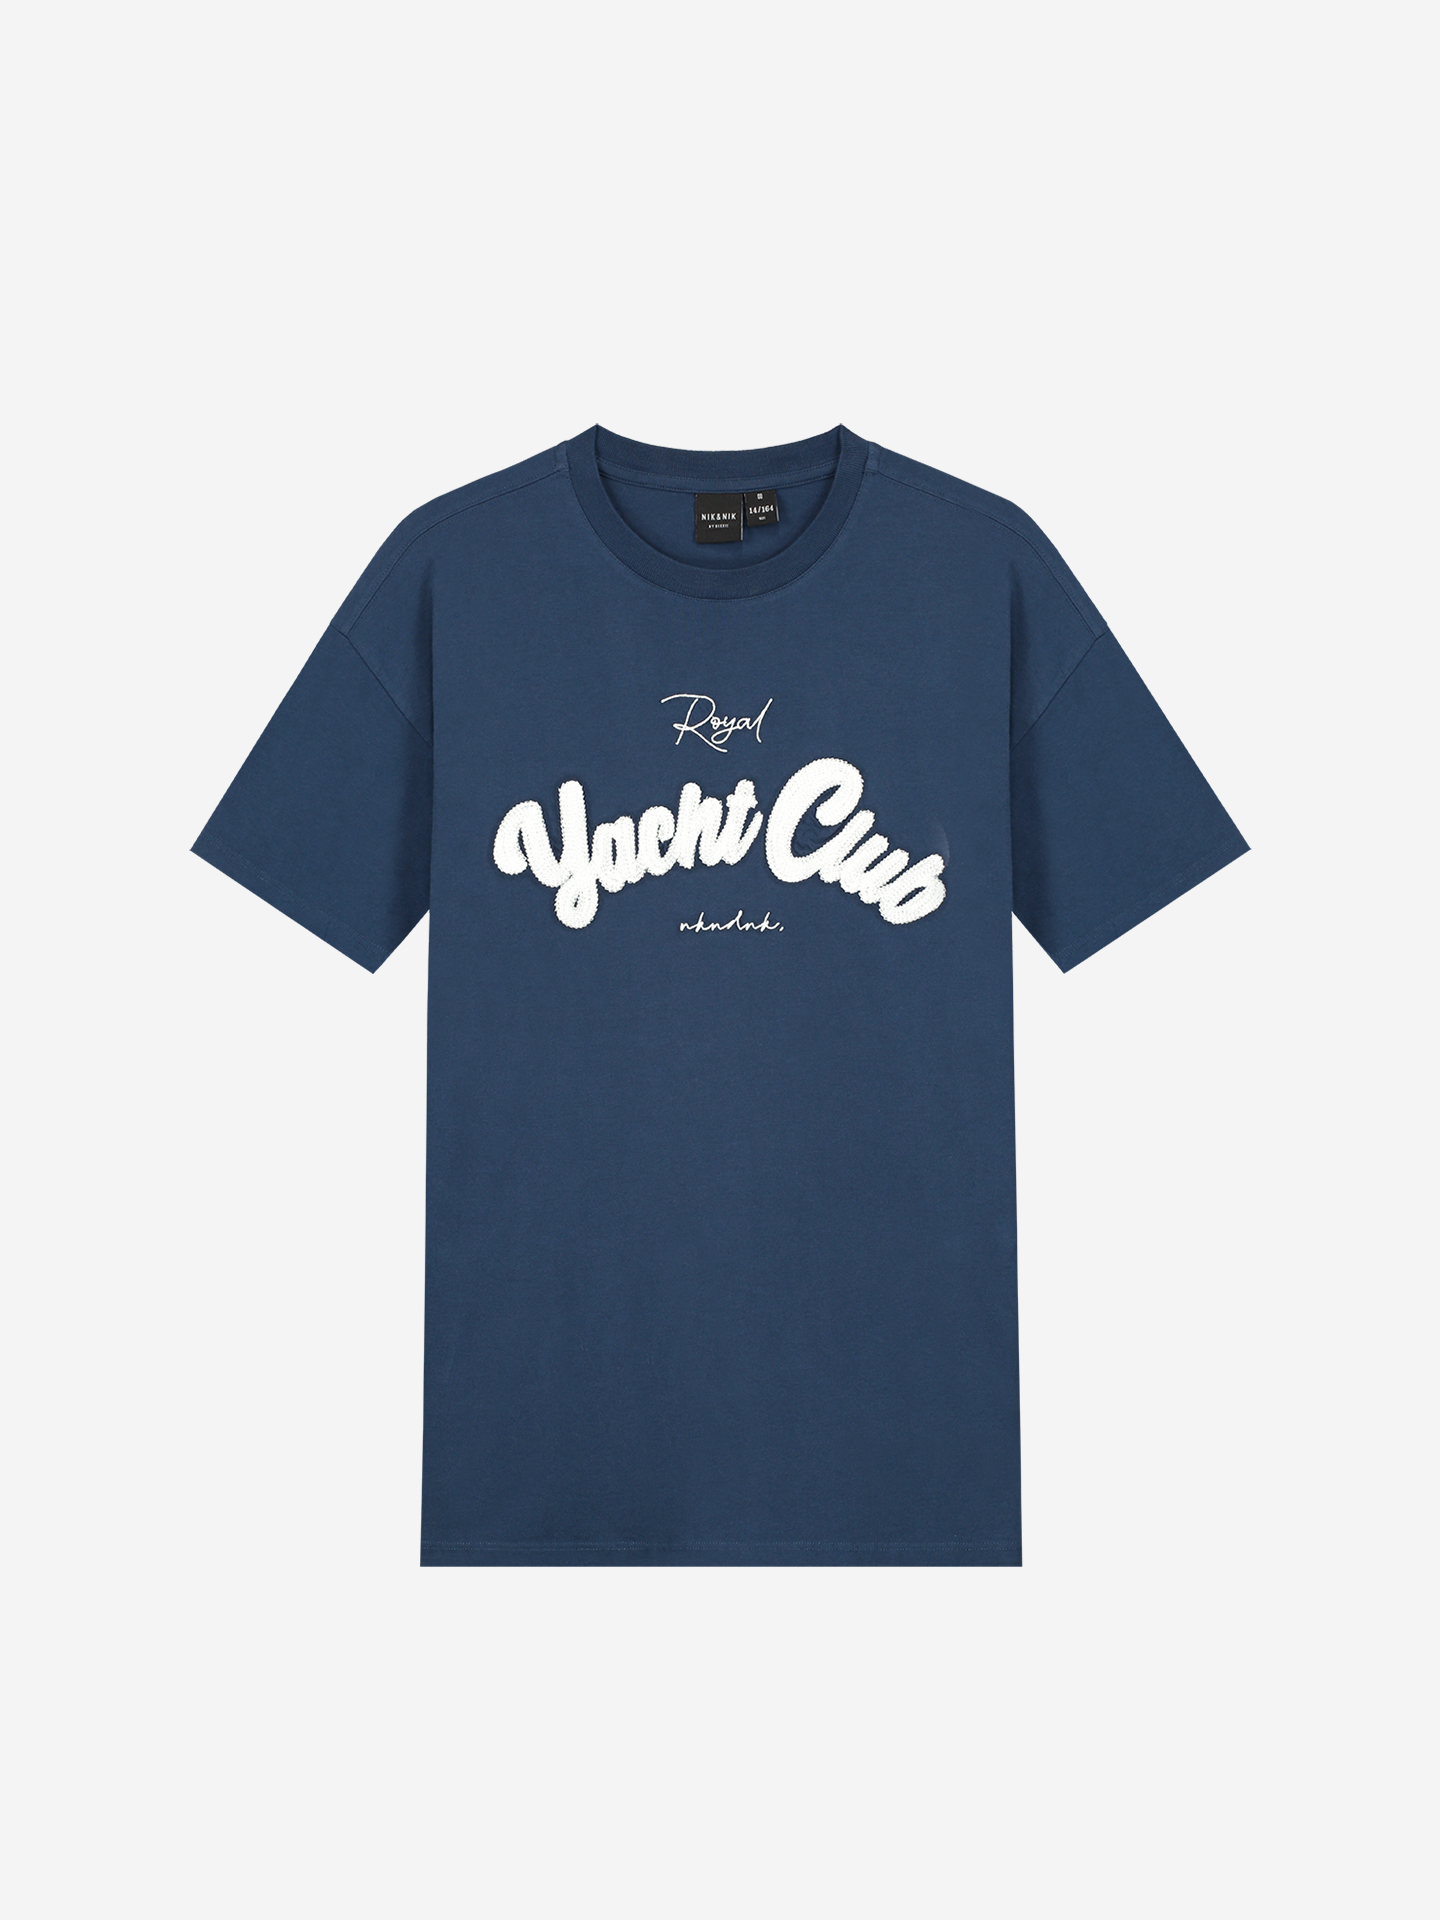 Yacht club T-shirt